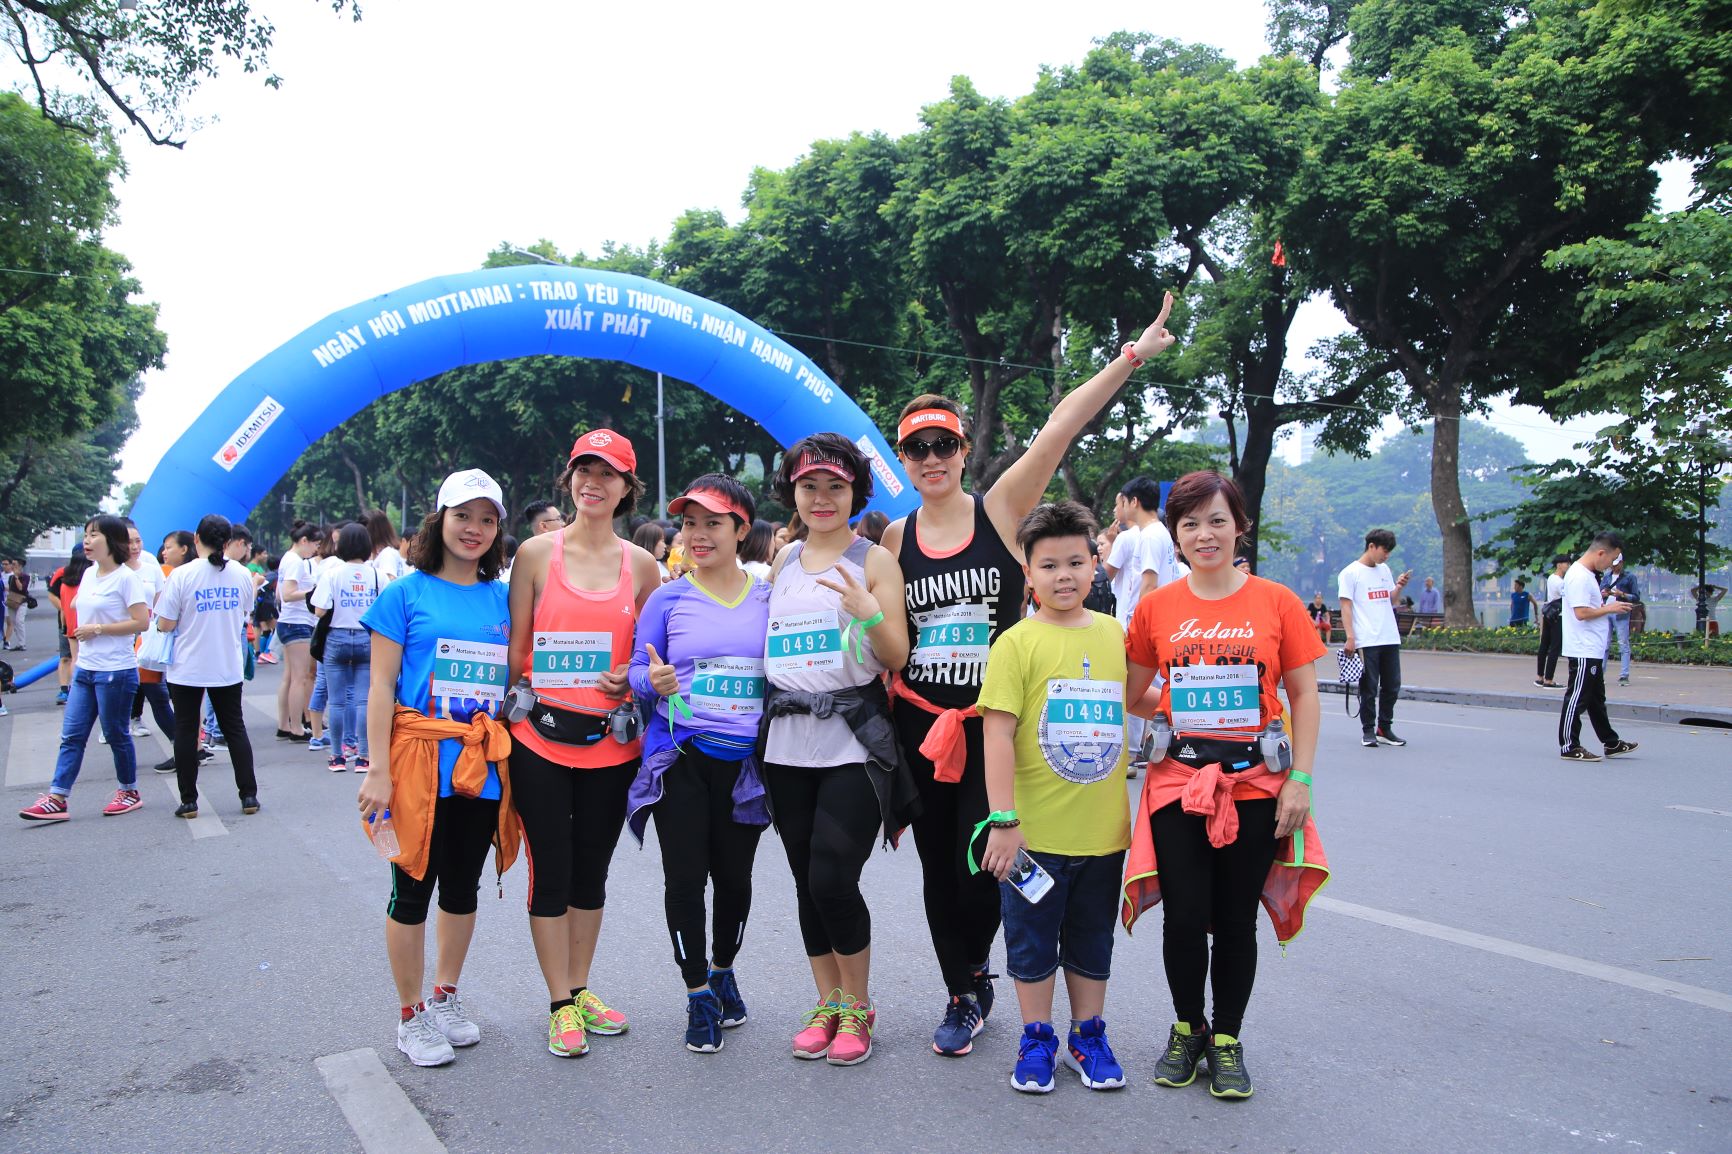 Mottainai Run thu hút khá nhiều người nước ngoài tham gia. Nhiều du khách tới Hà Nội du lịch tình cờ thấy cuộc thi và đã đăng ký thi chạy.